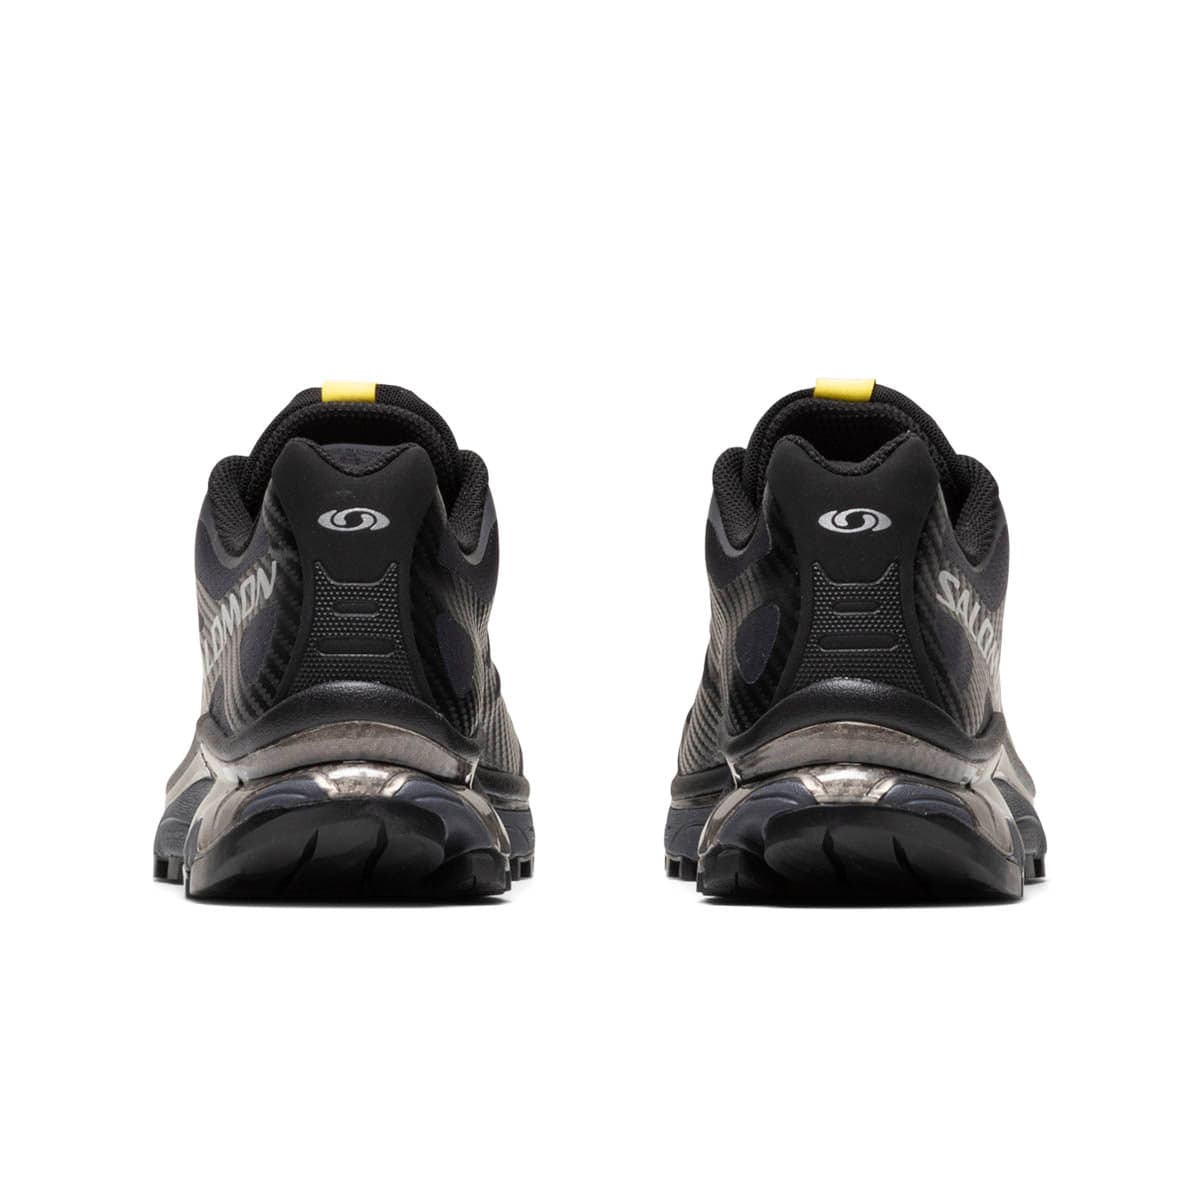 Salomon Sneakers XT-4 OG